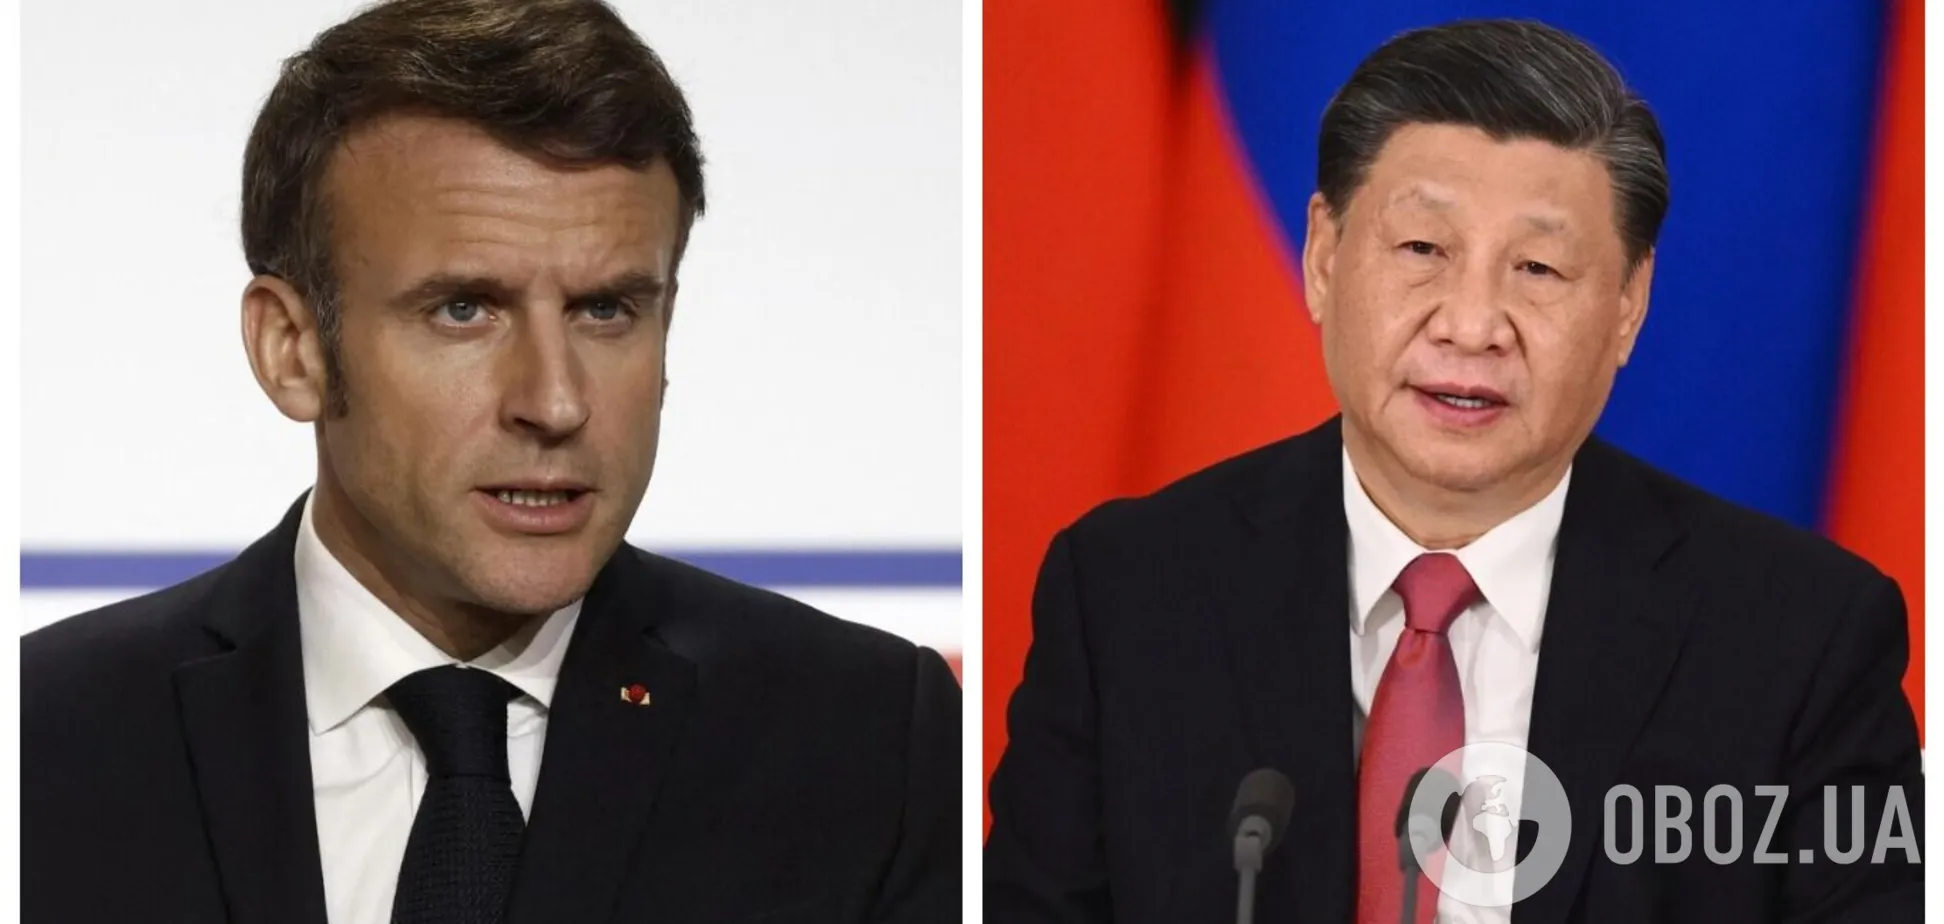 Макрон хочет разыграть 'личную карту': что стоит за визитом президента Франции в Китай и чего ждать Украине